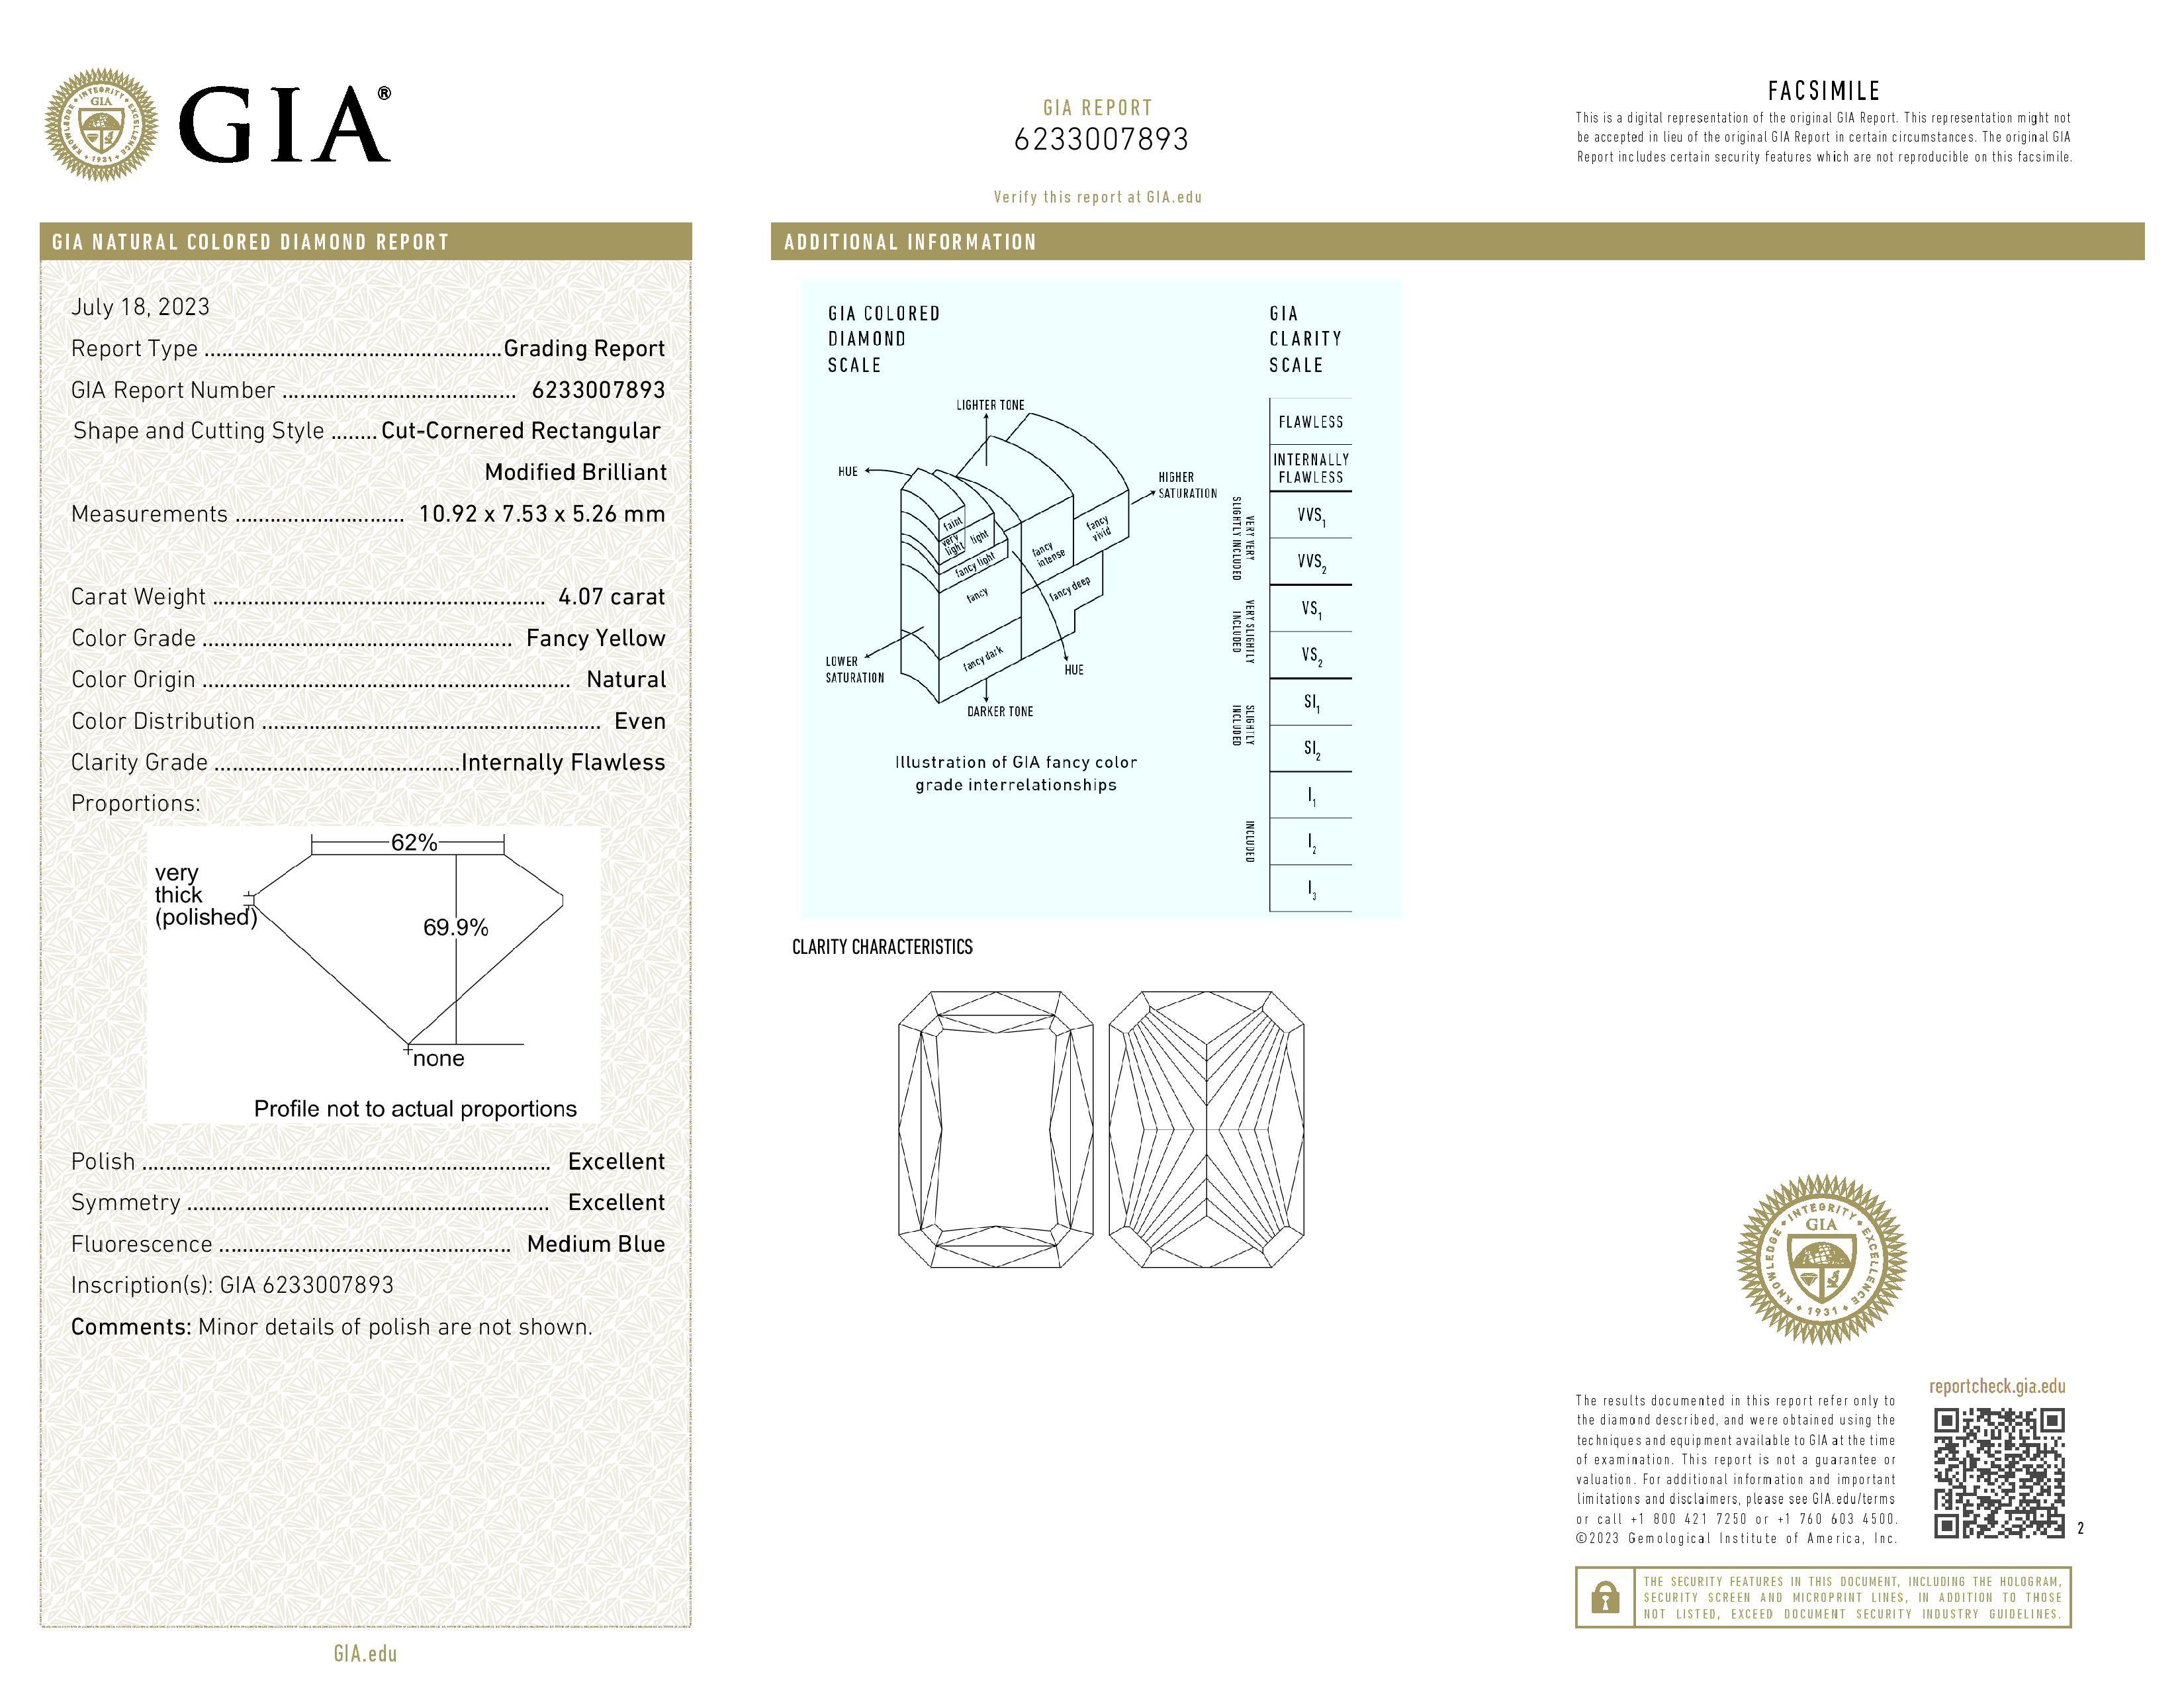 Ein exquisiter 4,07 Investment Grade Diamant im Brillantschliff, zertifiziert von GIA. Wir können das Design nach Ihren Wünschen gestalten, wobei je nach Design zusätzliche Gebühren anfallen können.

Form LR_BRILLIANT 
Karat 4,07 
Farbe FANCY YELLOW